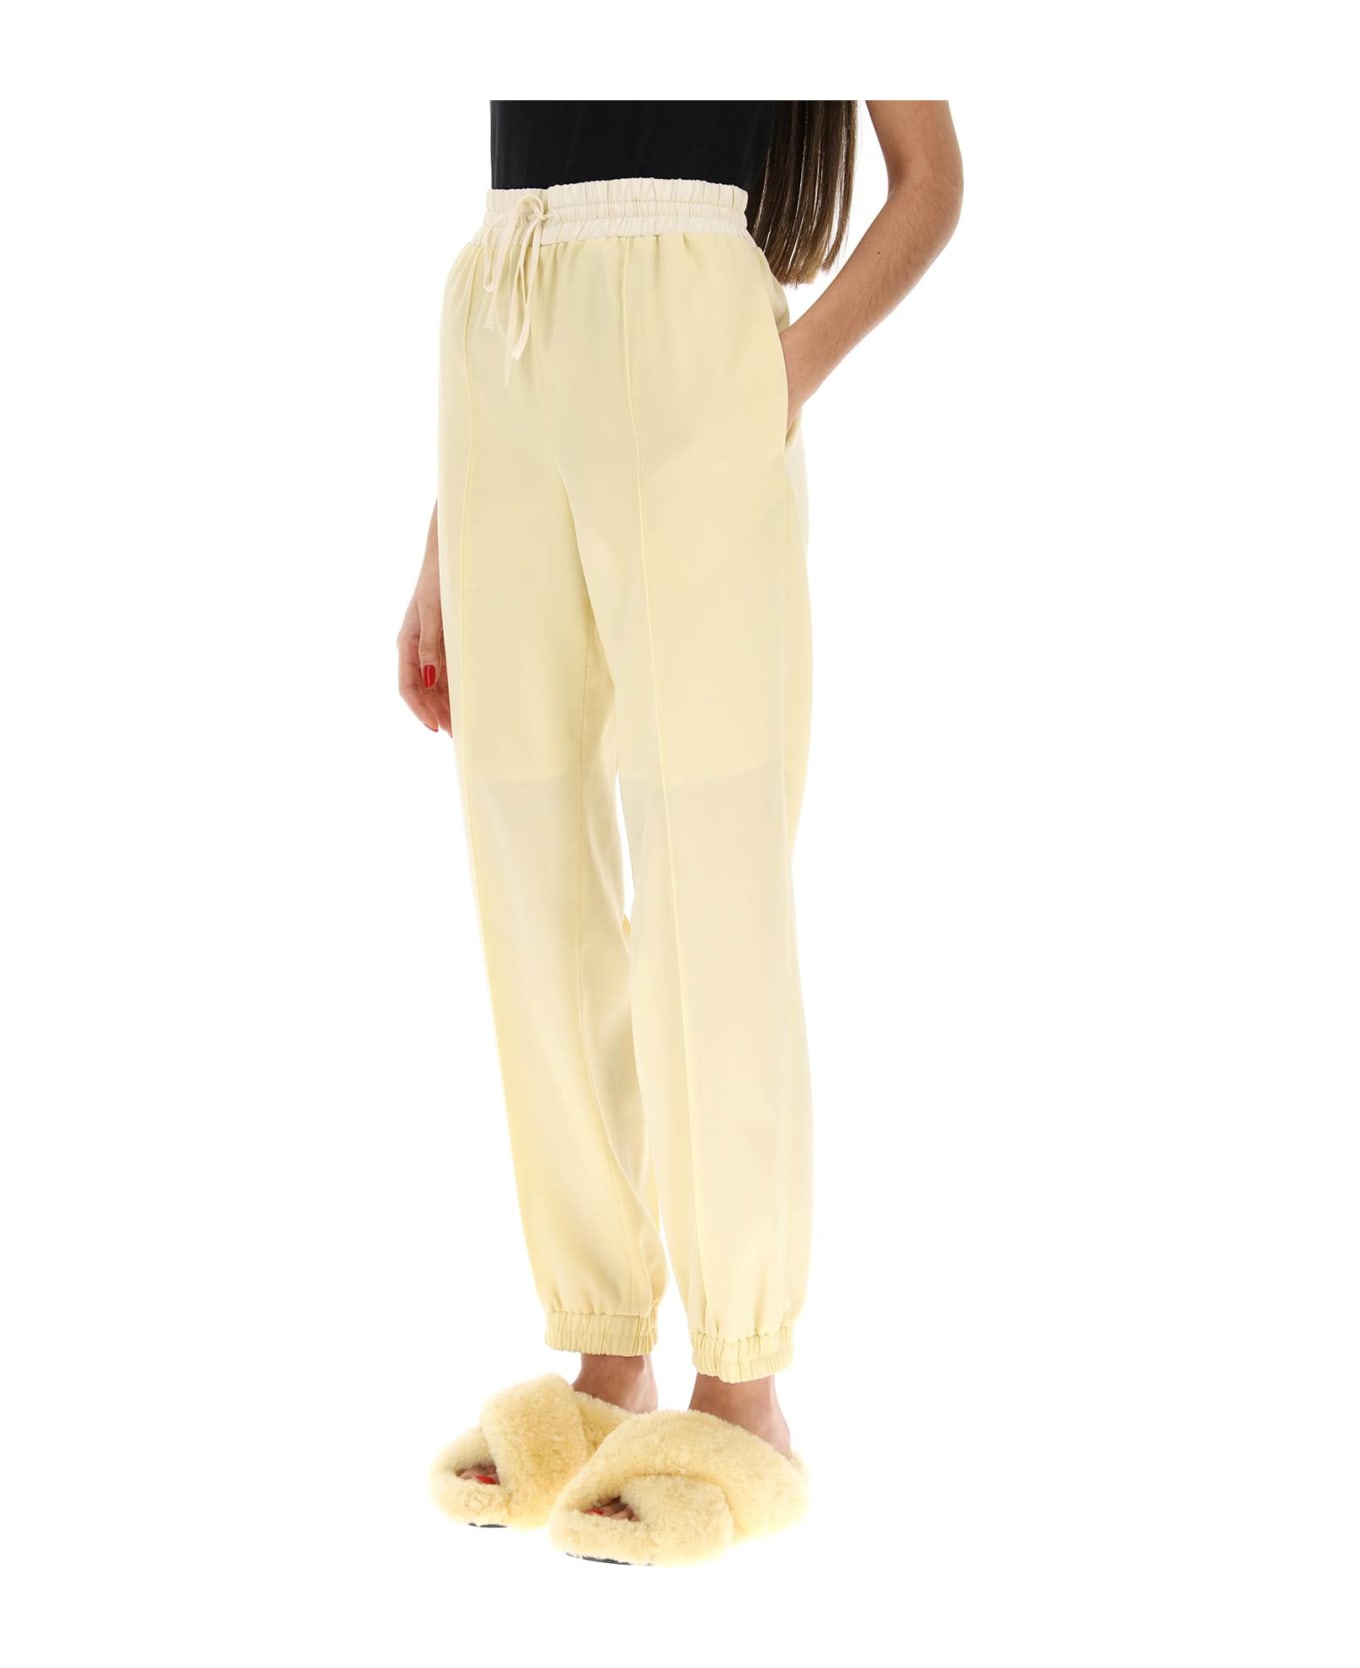 Jil Sander Virgin Wool Jogger Pants - BUTTER (Yellow)